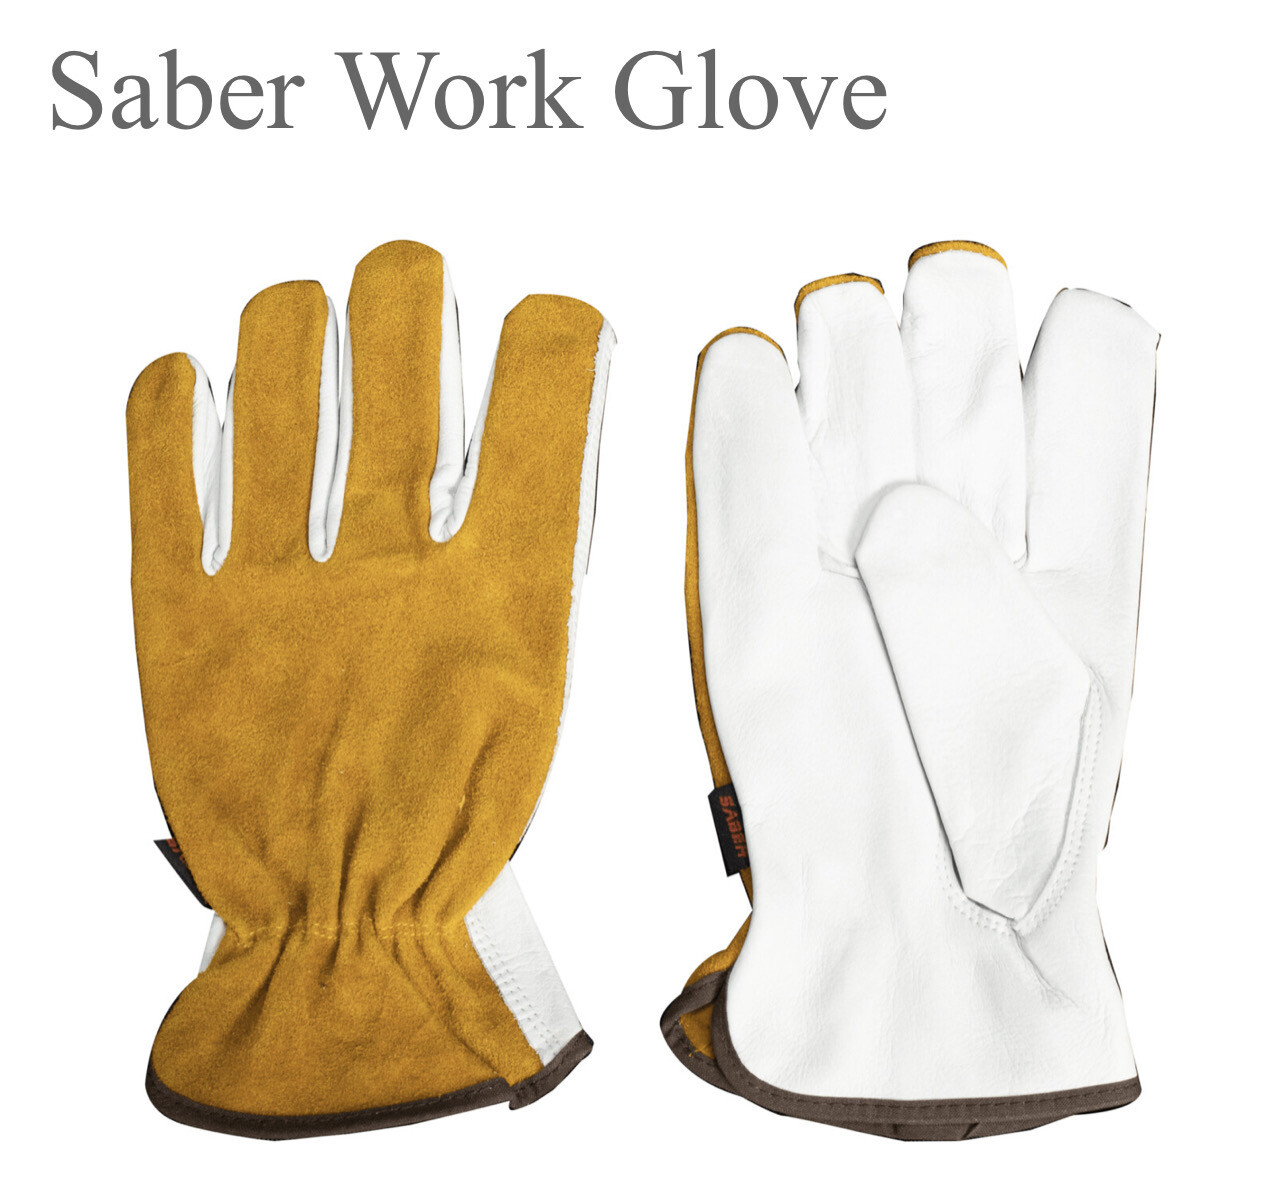 Saber Work Glove